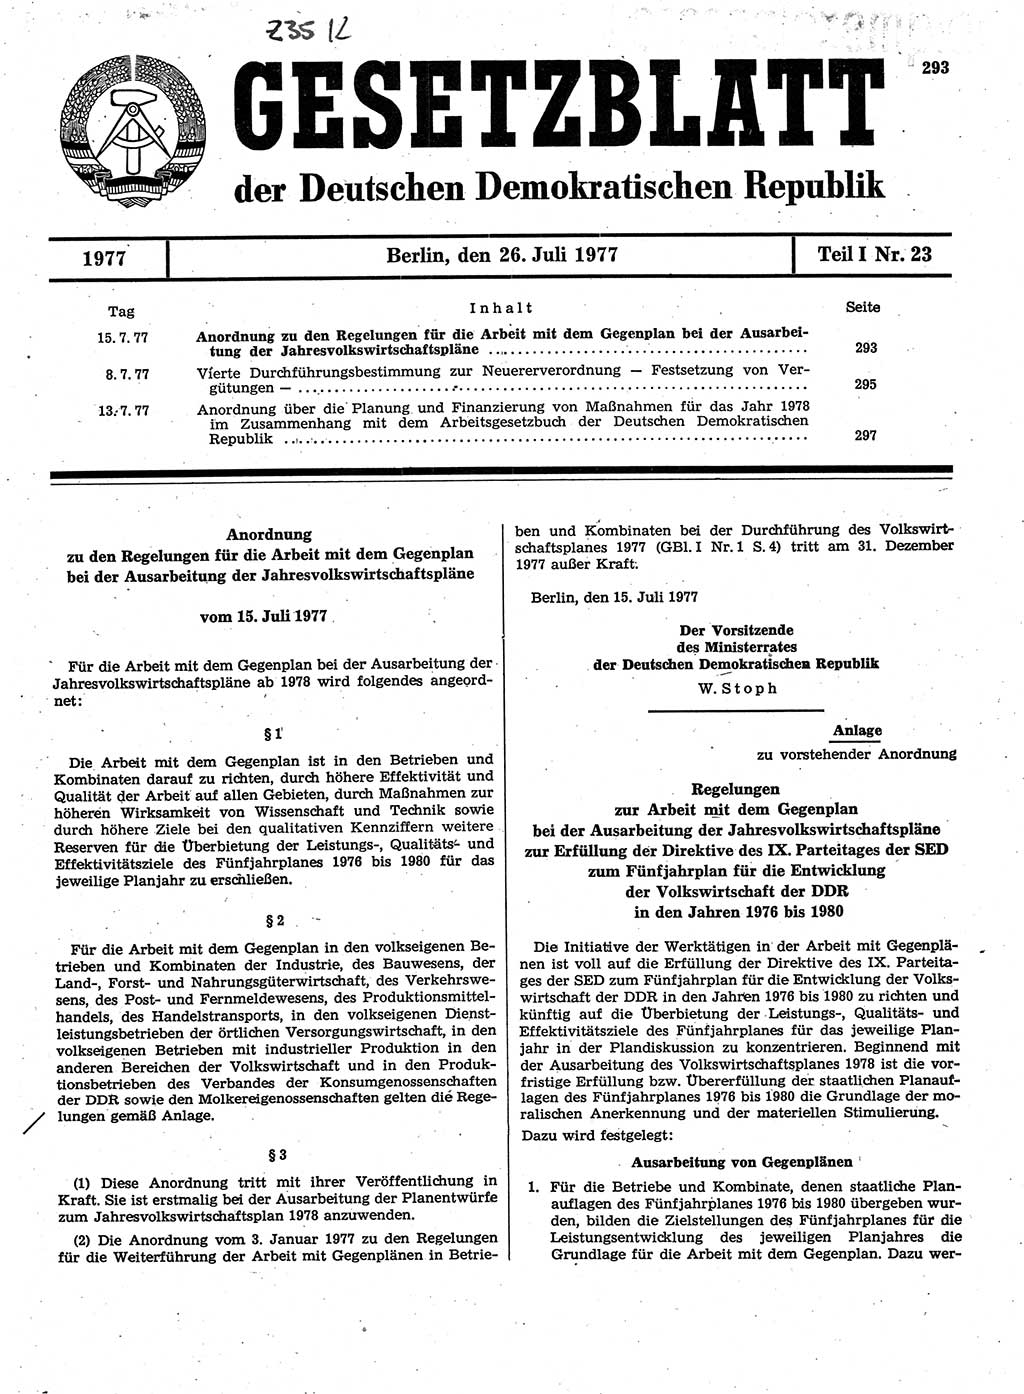 Gesetzblatt (GBl.) der Deutschen Demokratischen Republik (DDR) Teil Ⅰ 1977, Seite 293 (GBl. DDR Ⅰ 1977, S. 293)